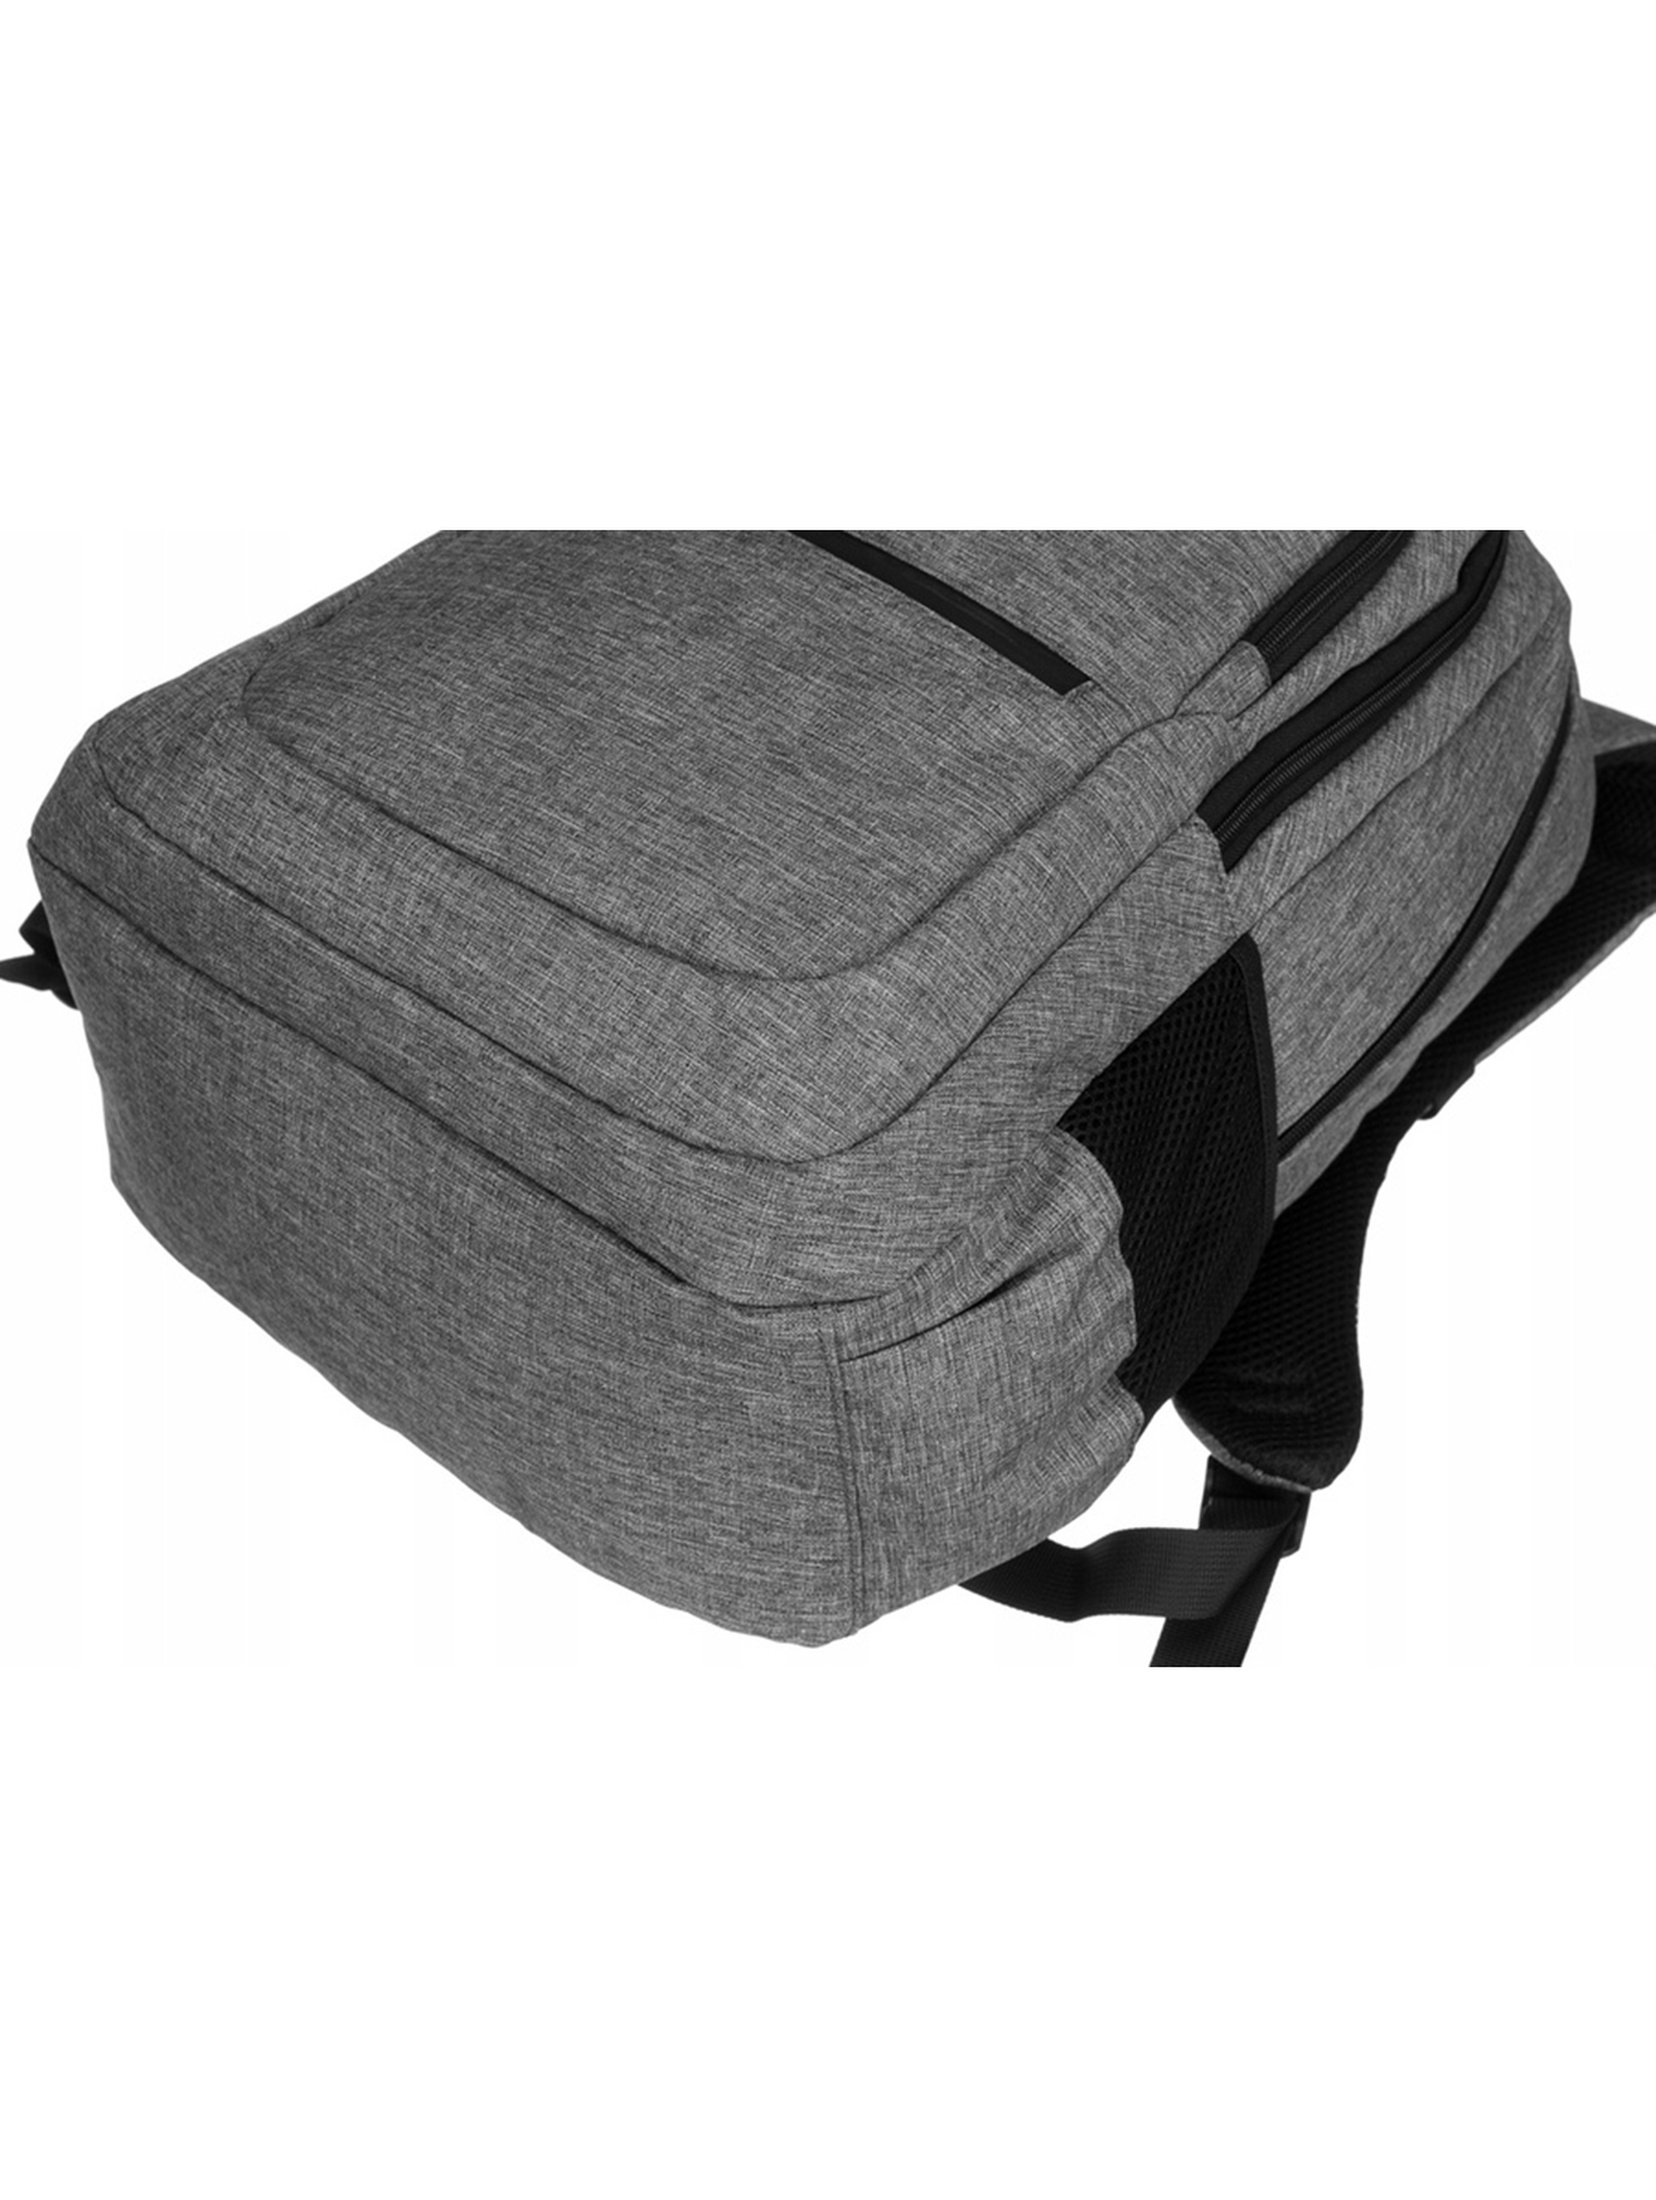 Pojemny, materiałowy plecak na laptopa — David Jones szary